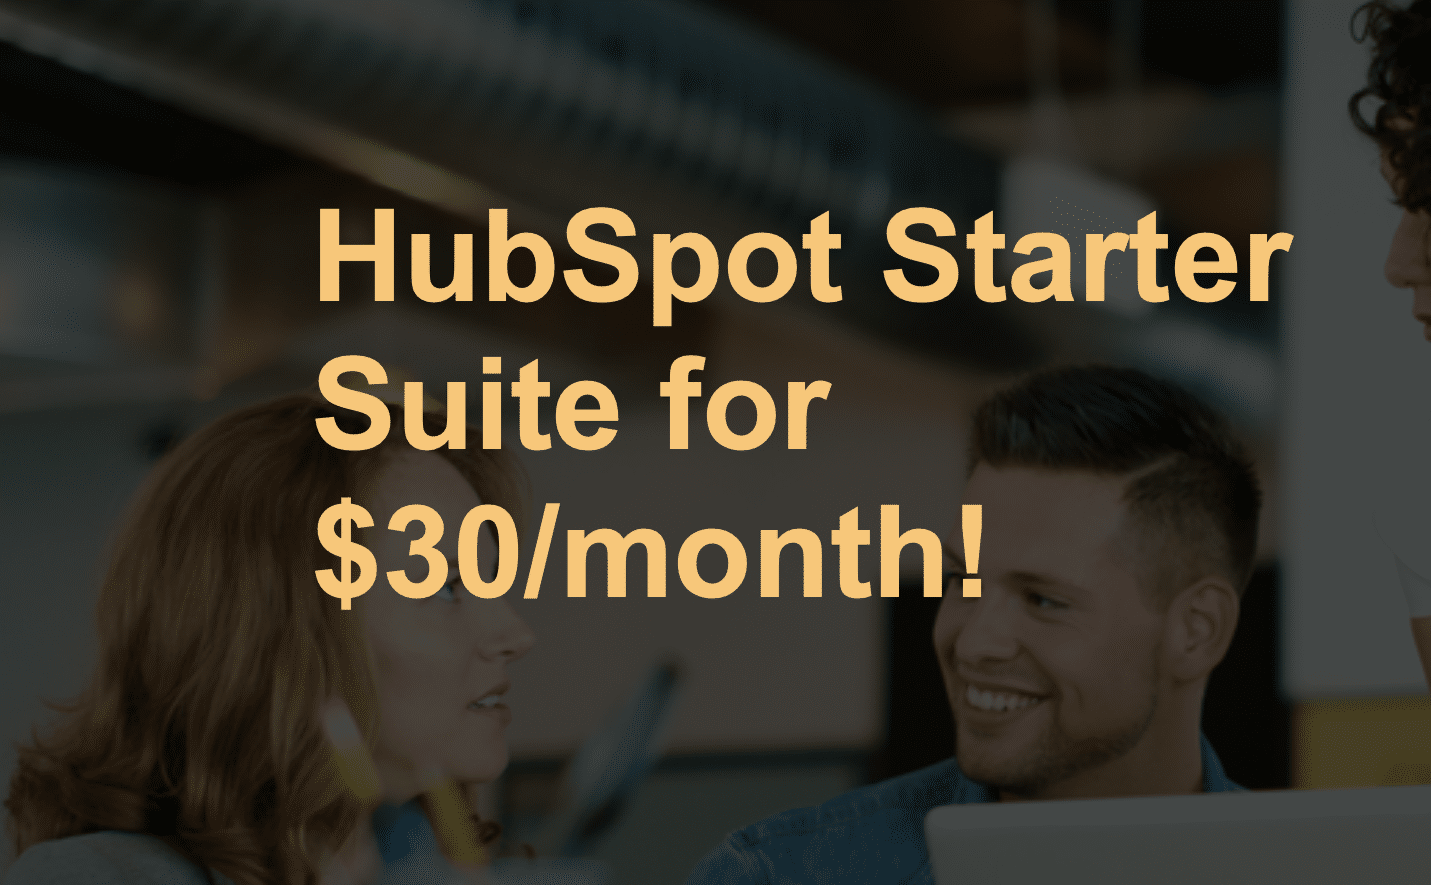 HubSpot’s Marketing Hub